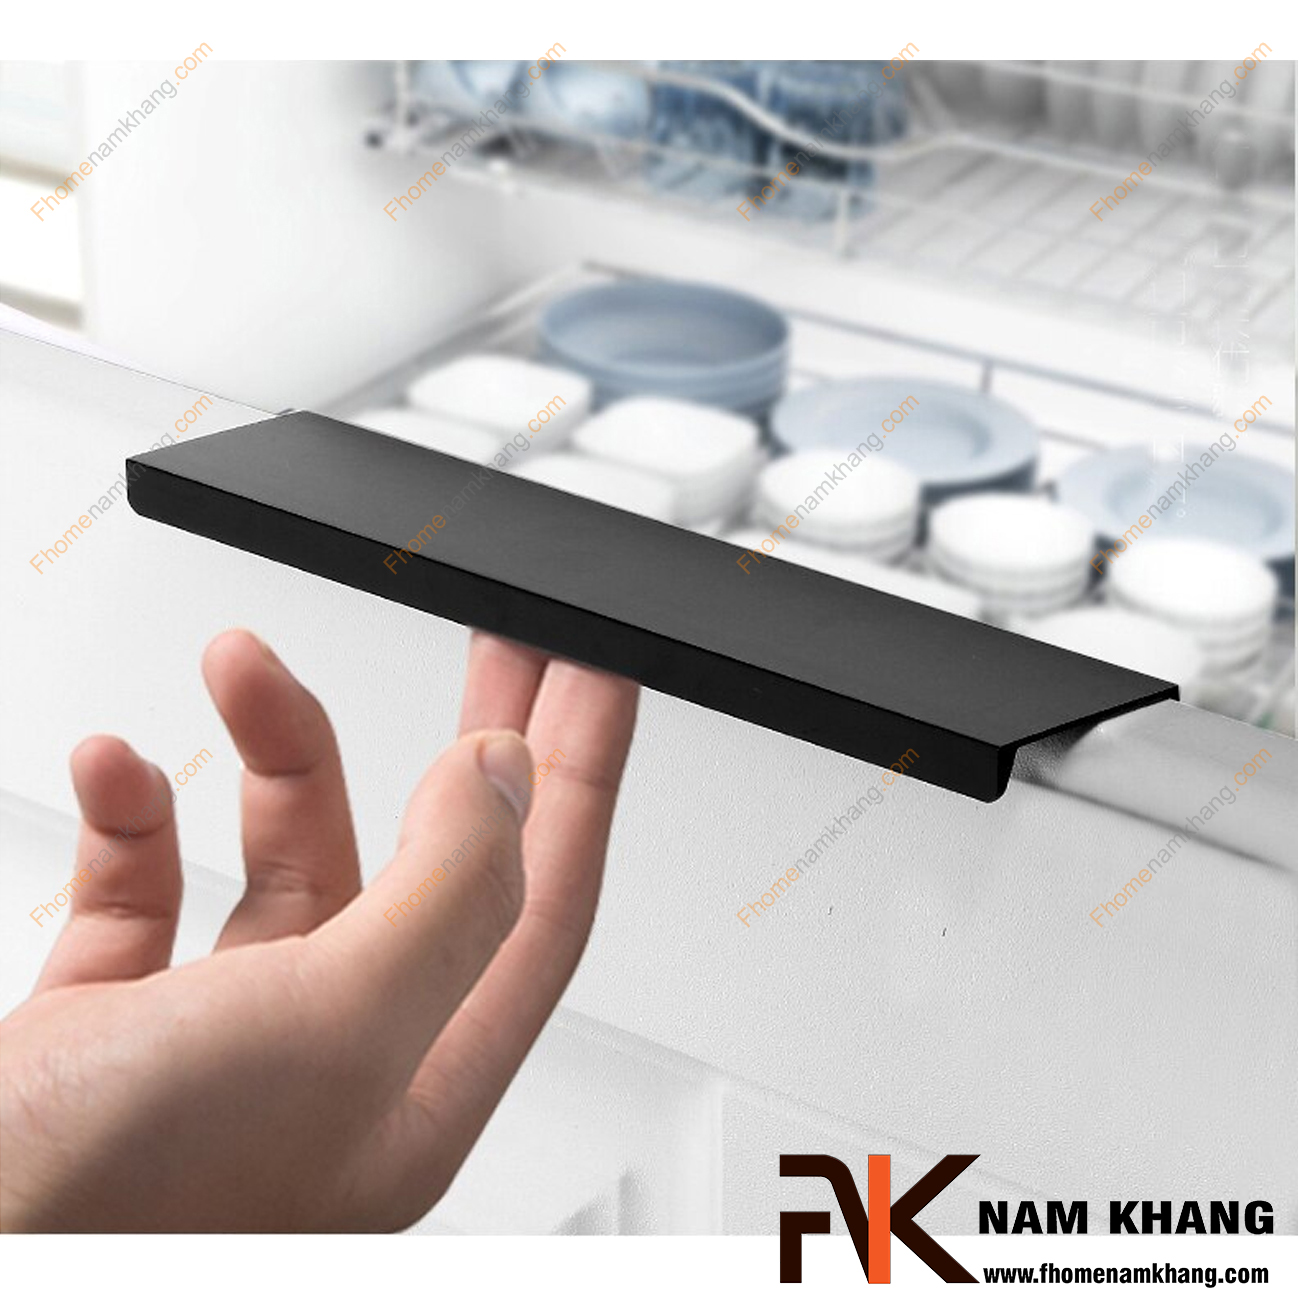 Tay nắm tủ bắt cạnh dạng thanh dài màu đen NK312-D2 rất đặc trưng bởi thiết kế thanh mỏng dạng chữ L. Với thanh có độ dày đạt chuẩn và được sản xuất từ vật liệu cao cấp